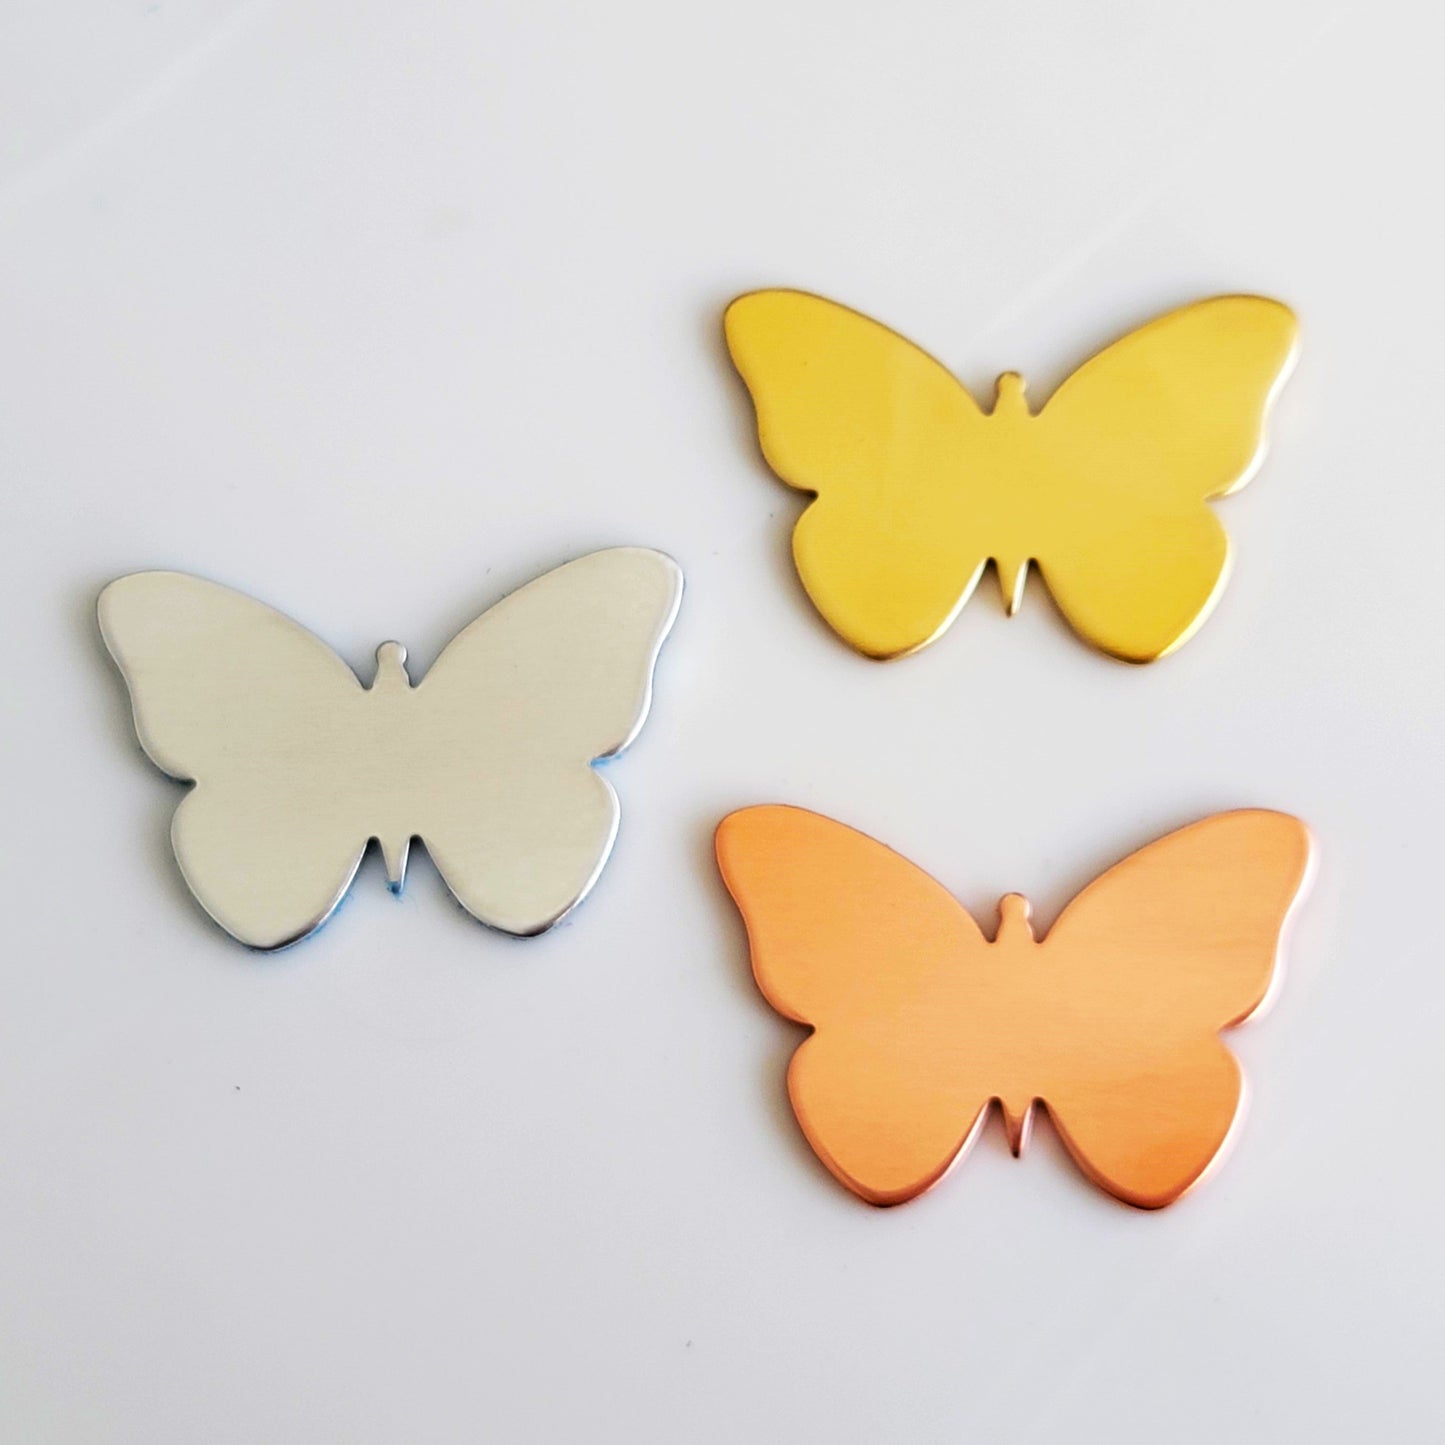 1" x 1 1/2" Butterfly - 14g COPPER